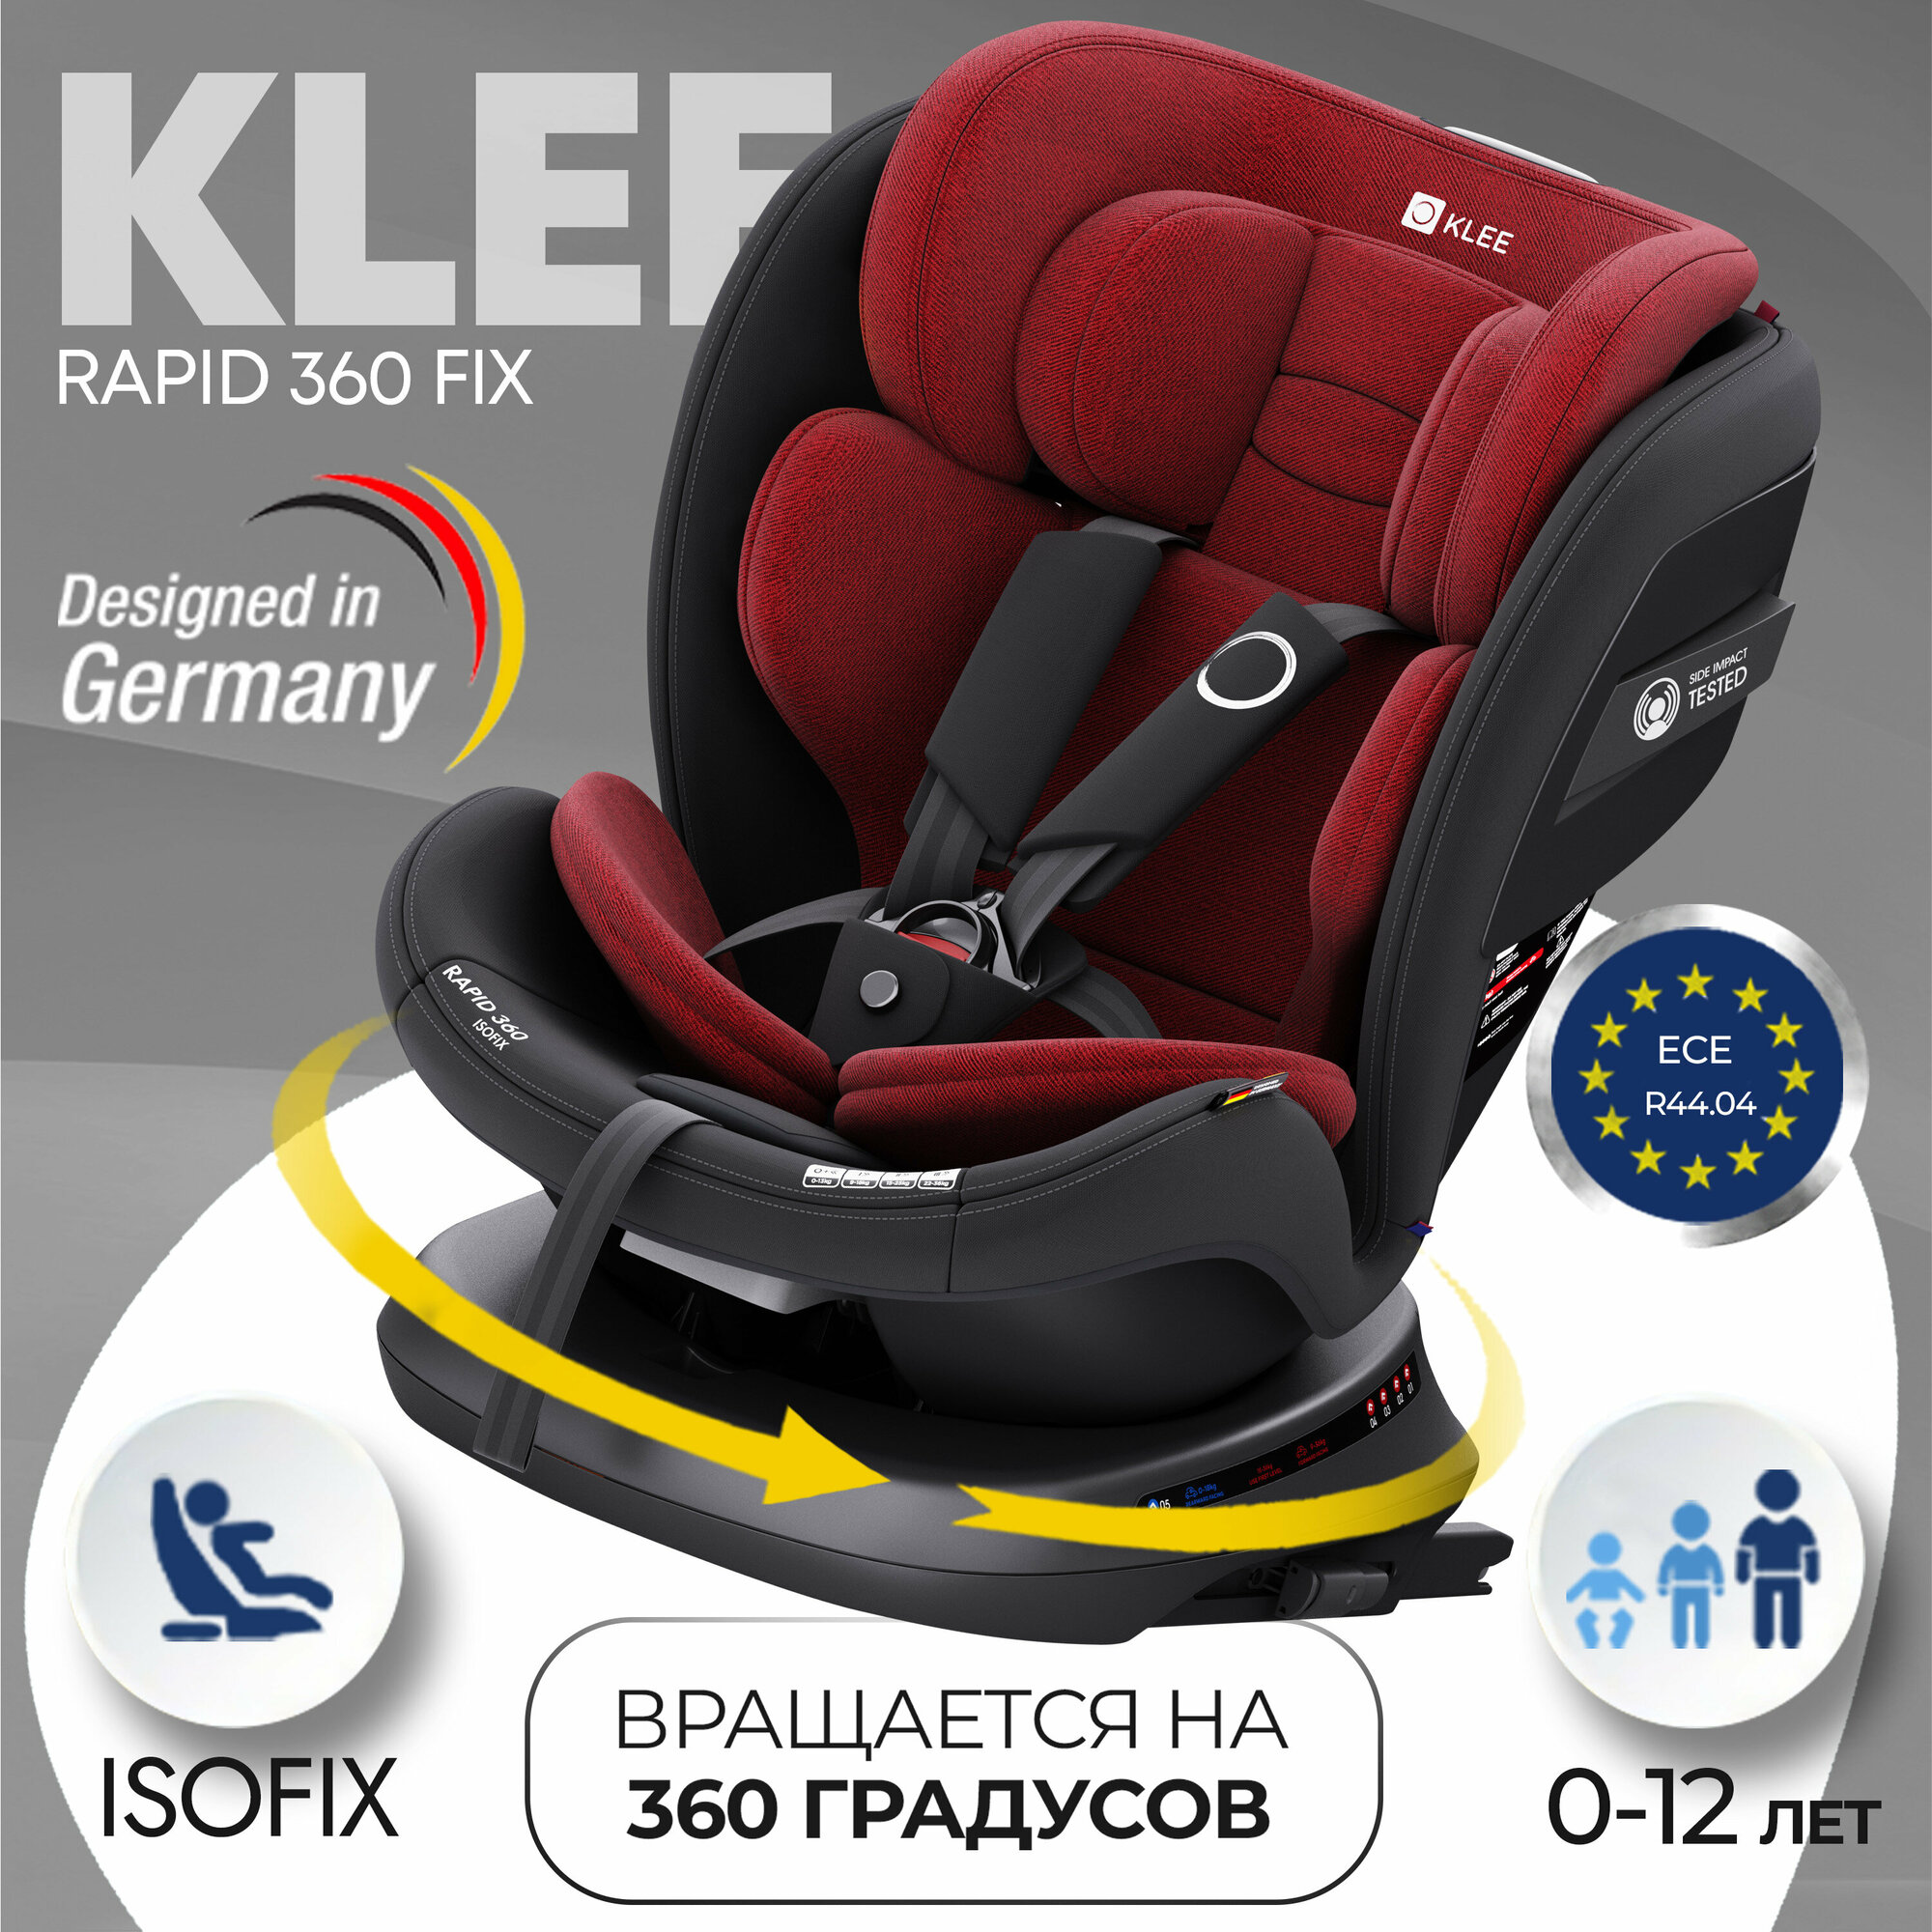 KLEE Rapid 360 Fix Deep Blue автокресло от 0 до 36 кг с Isofix